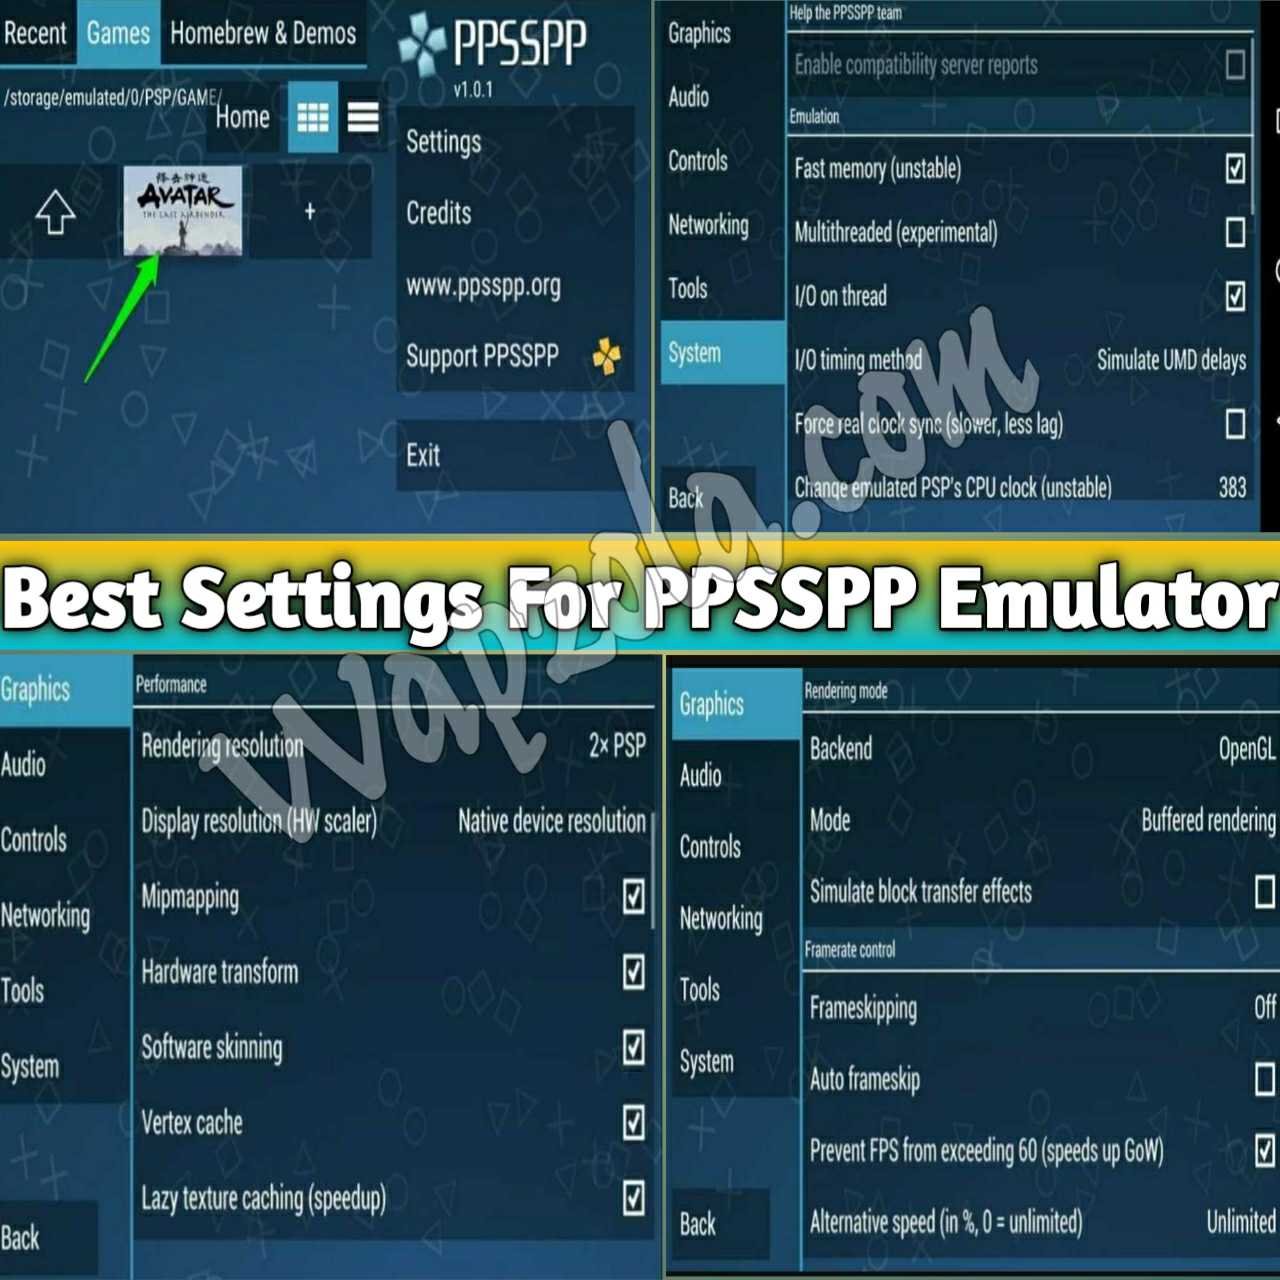 Los mejores ajustes para el emulador de PPSSPP/PSP en los teléfonos inteligentes Android y en el PC (100% Lag arreglar y resolver los problemas de sonido) 6